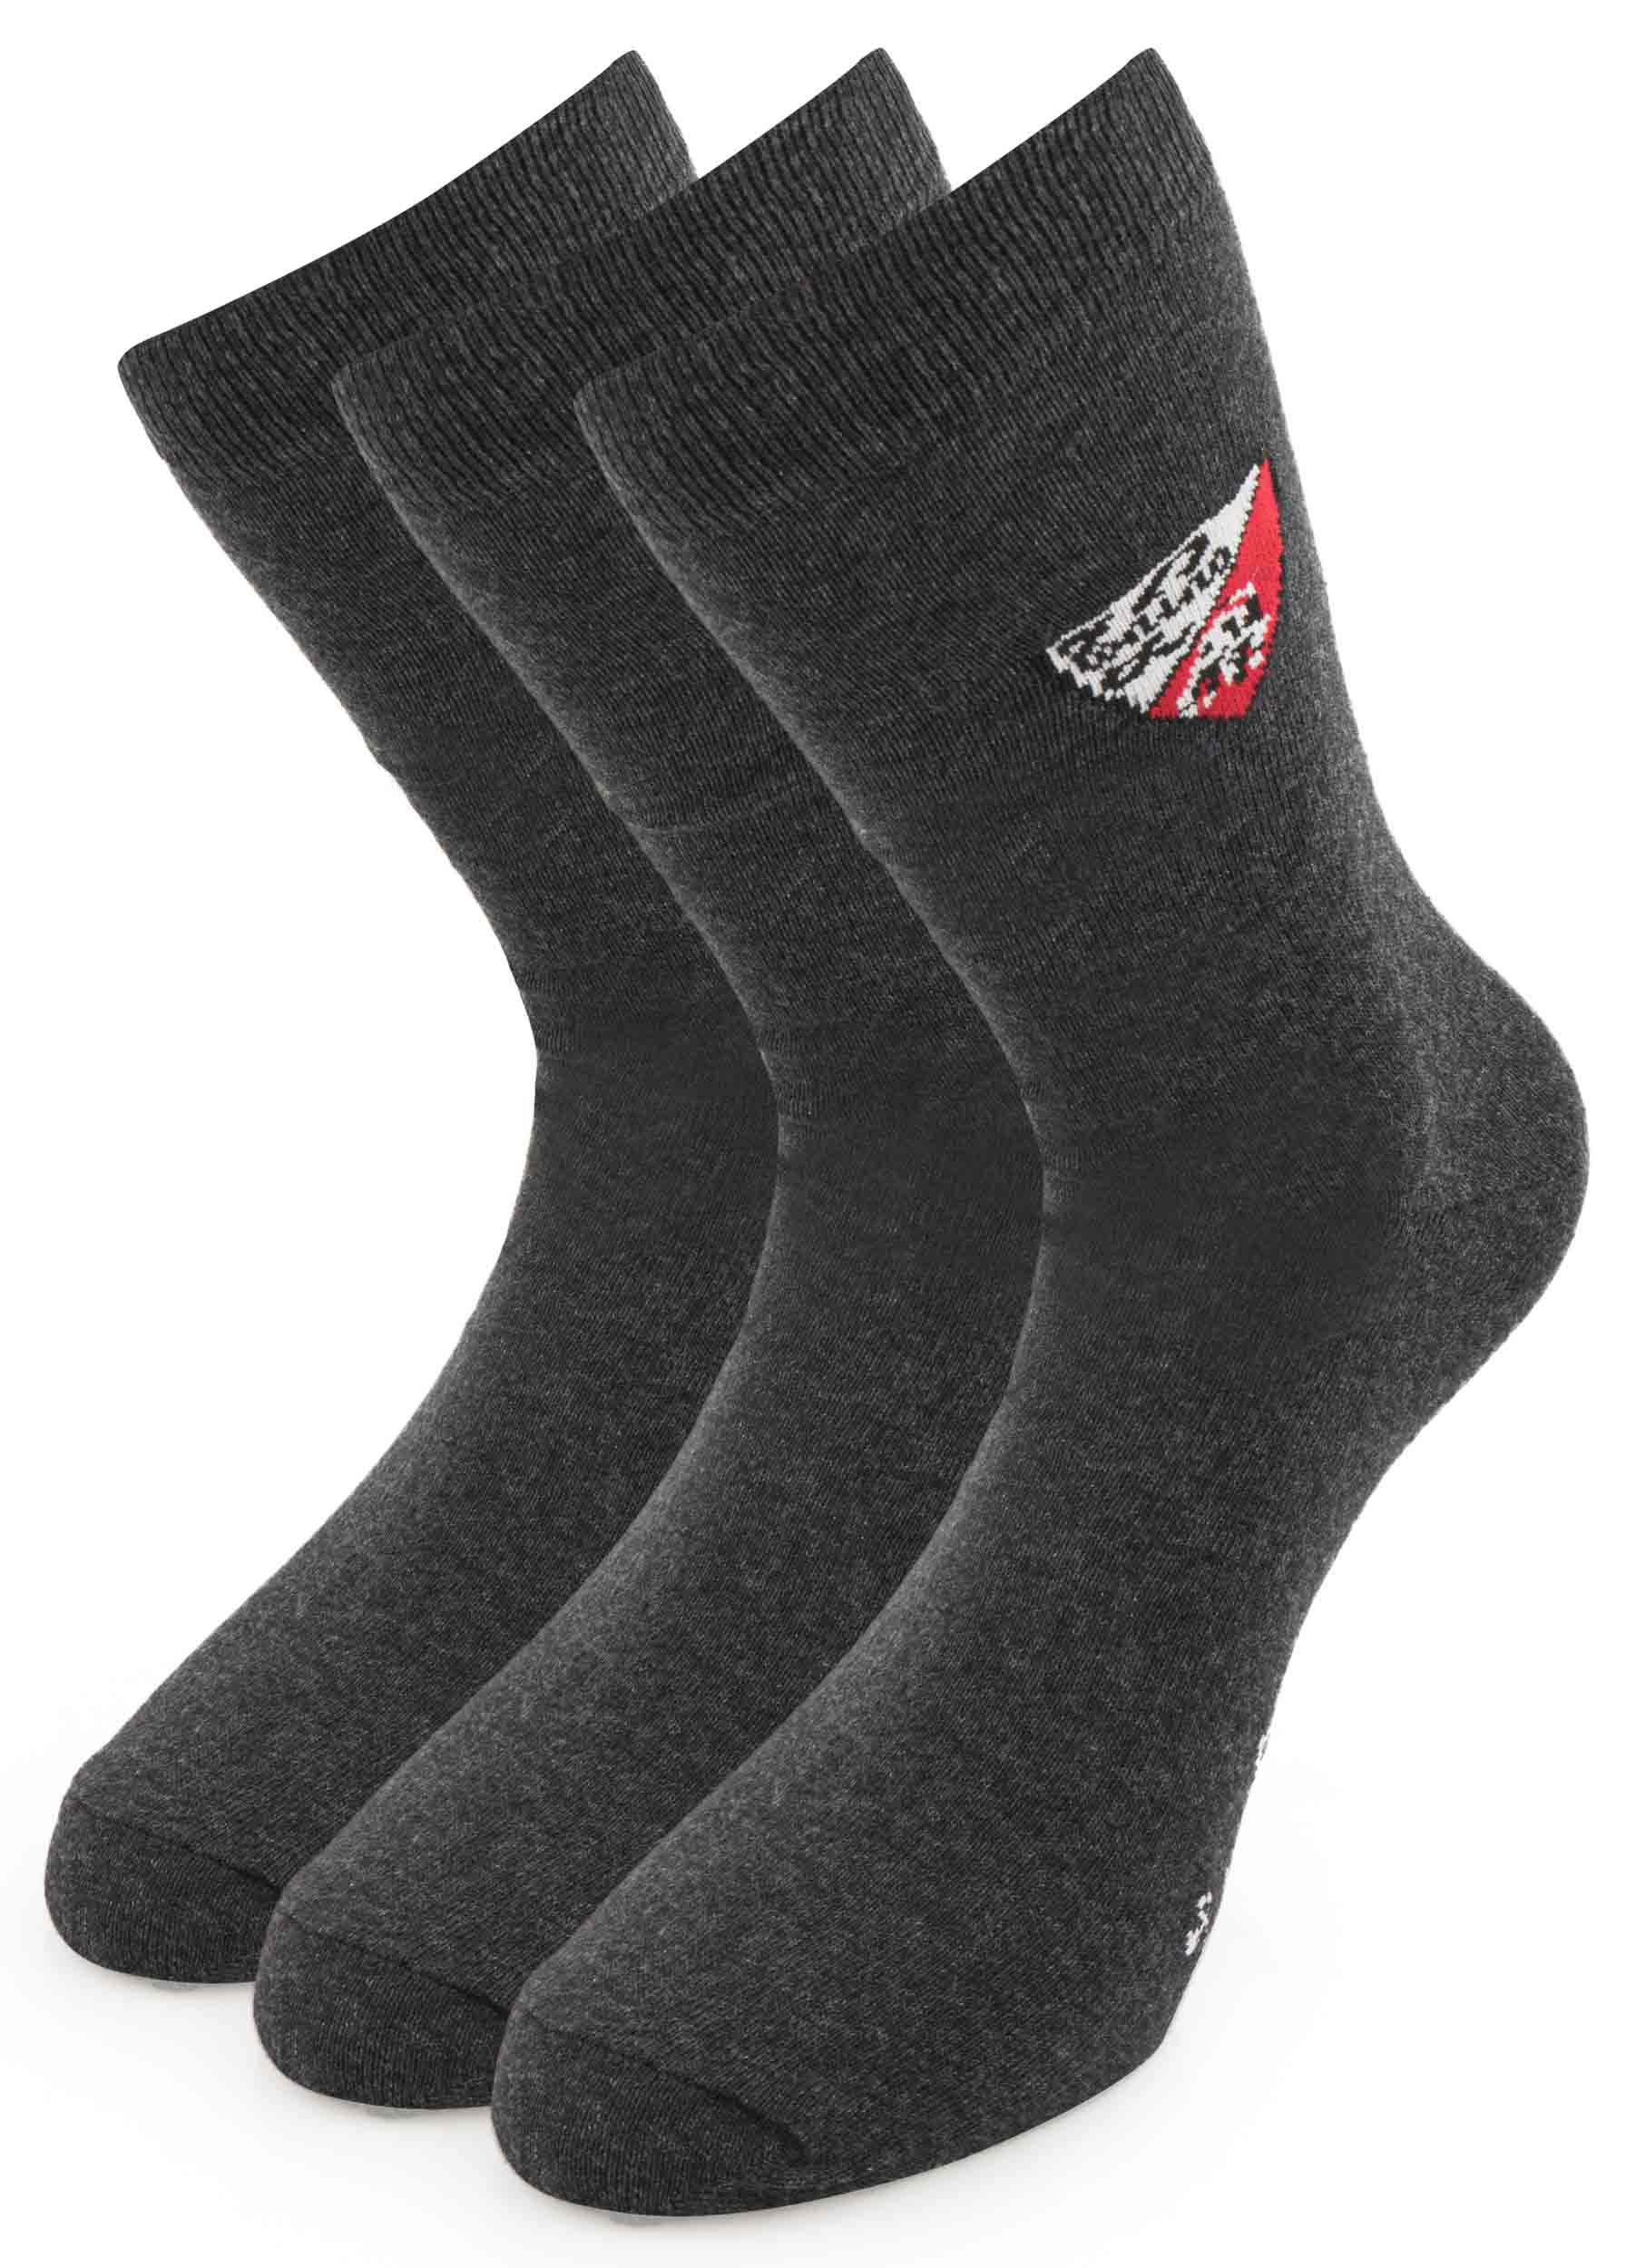 Ponožky Tonino Lamborghini šedé 3 páry|39-42